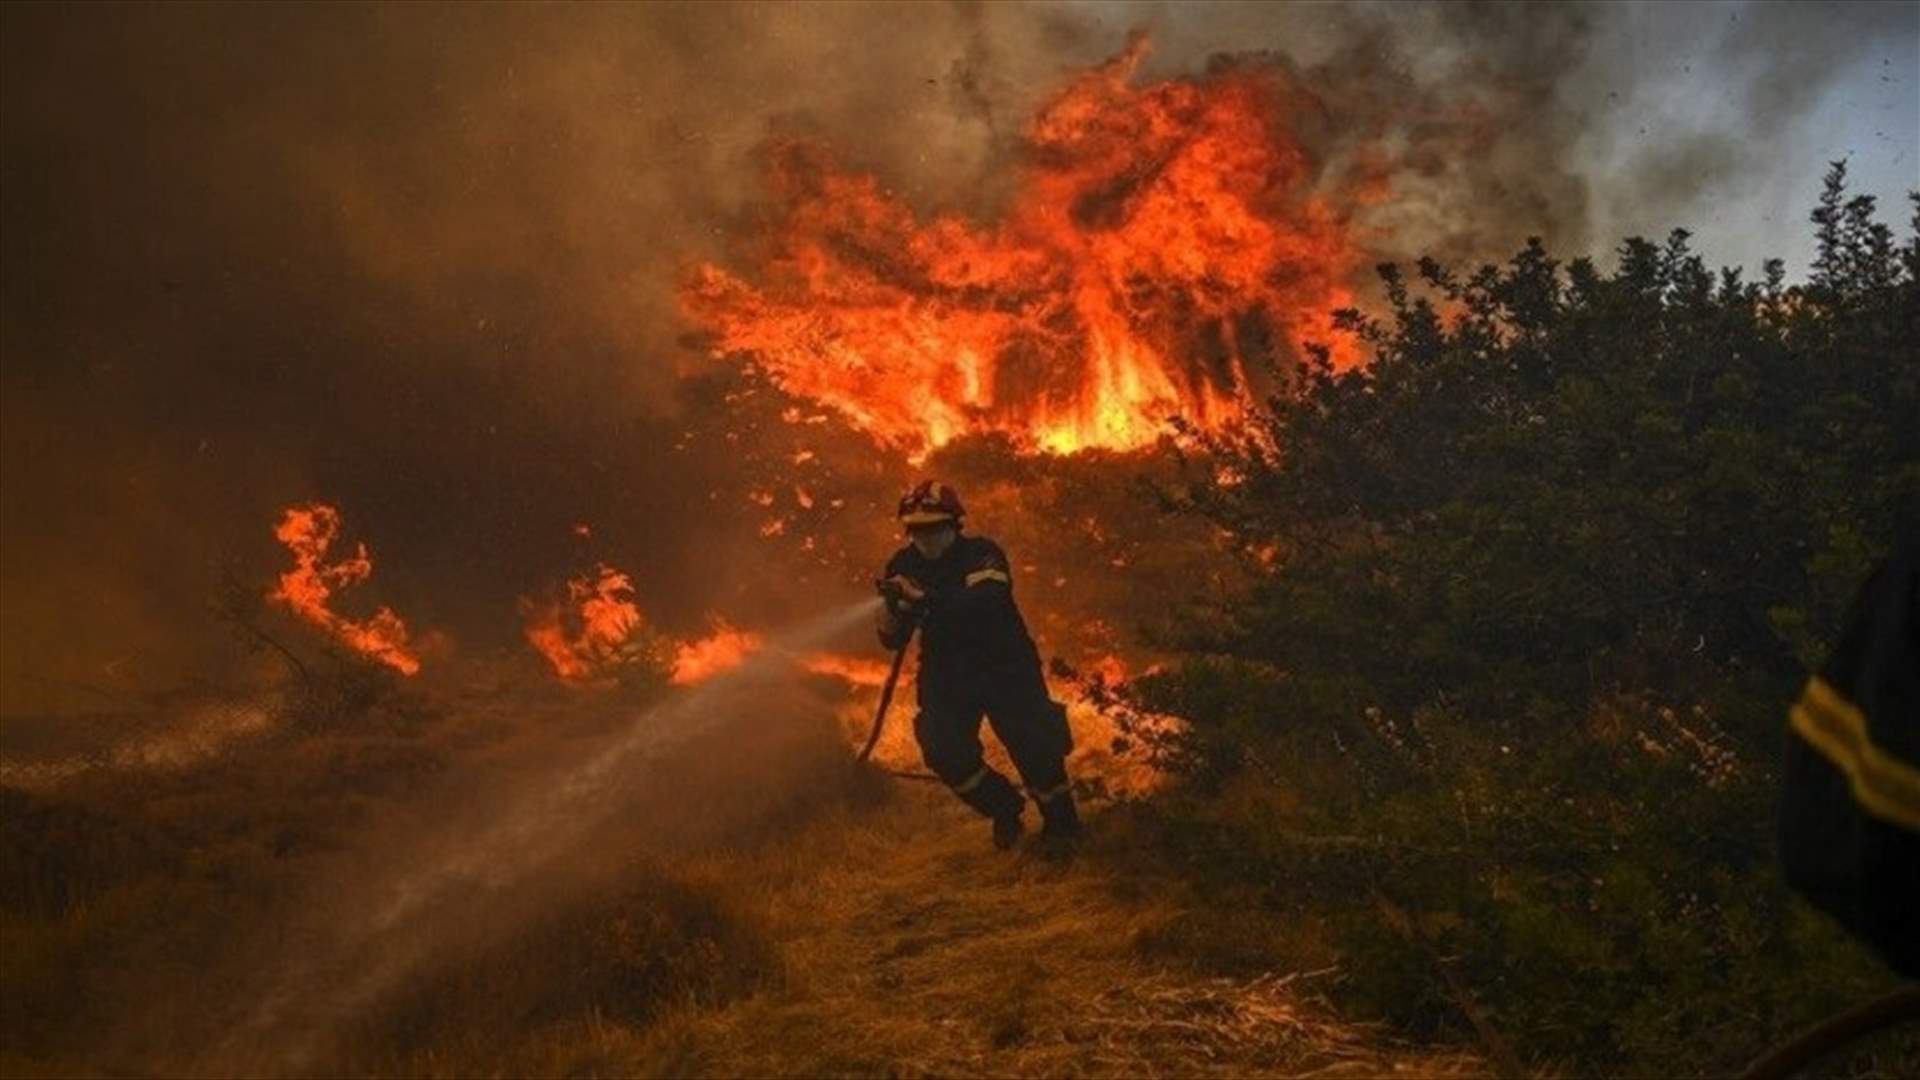 اليونان .. أكبر عملية إجلاء تشهدها البلاد بسبب الحرائق في جزيرة رودس